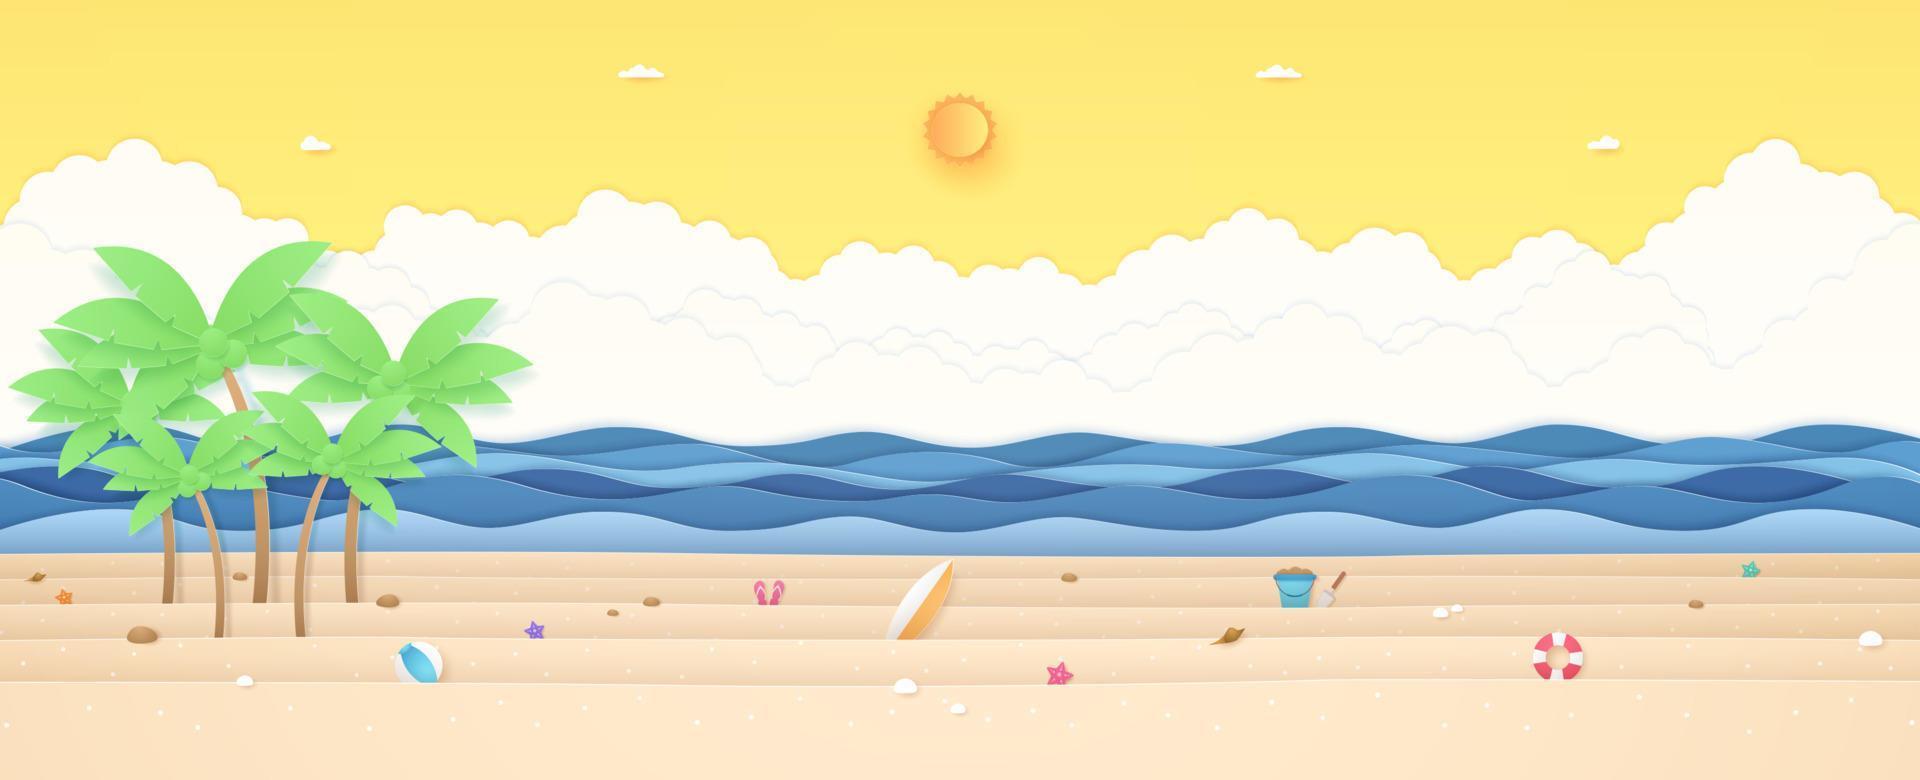 horario de verano, paisaje tropical, cocoteros y cosas de verano en la playa con mar ondulado, sol brillante y cielo soleado naranja, estilo de arte en papel vector